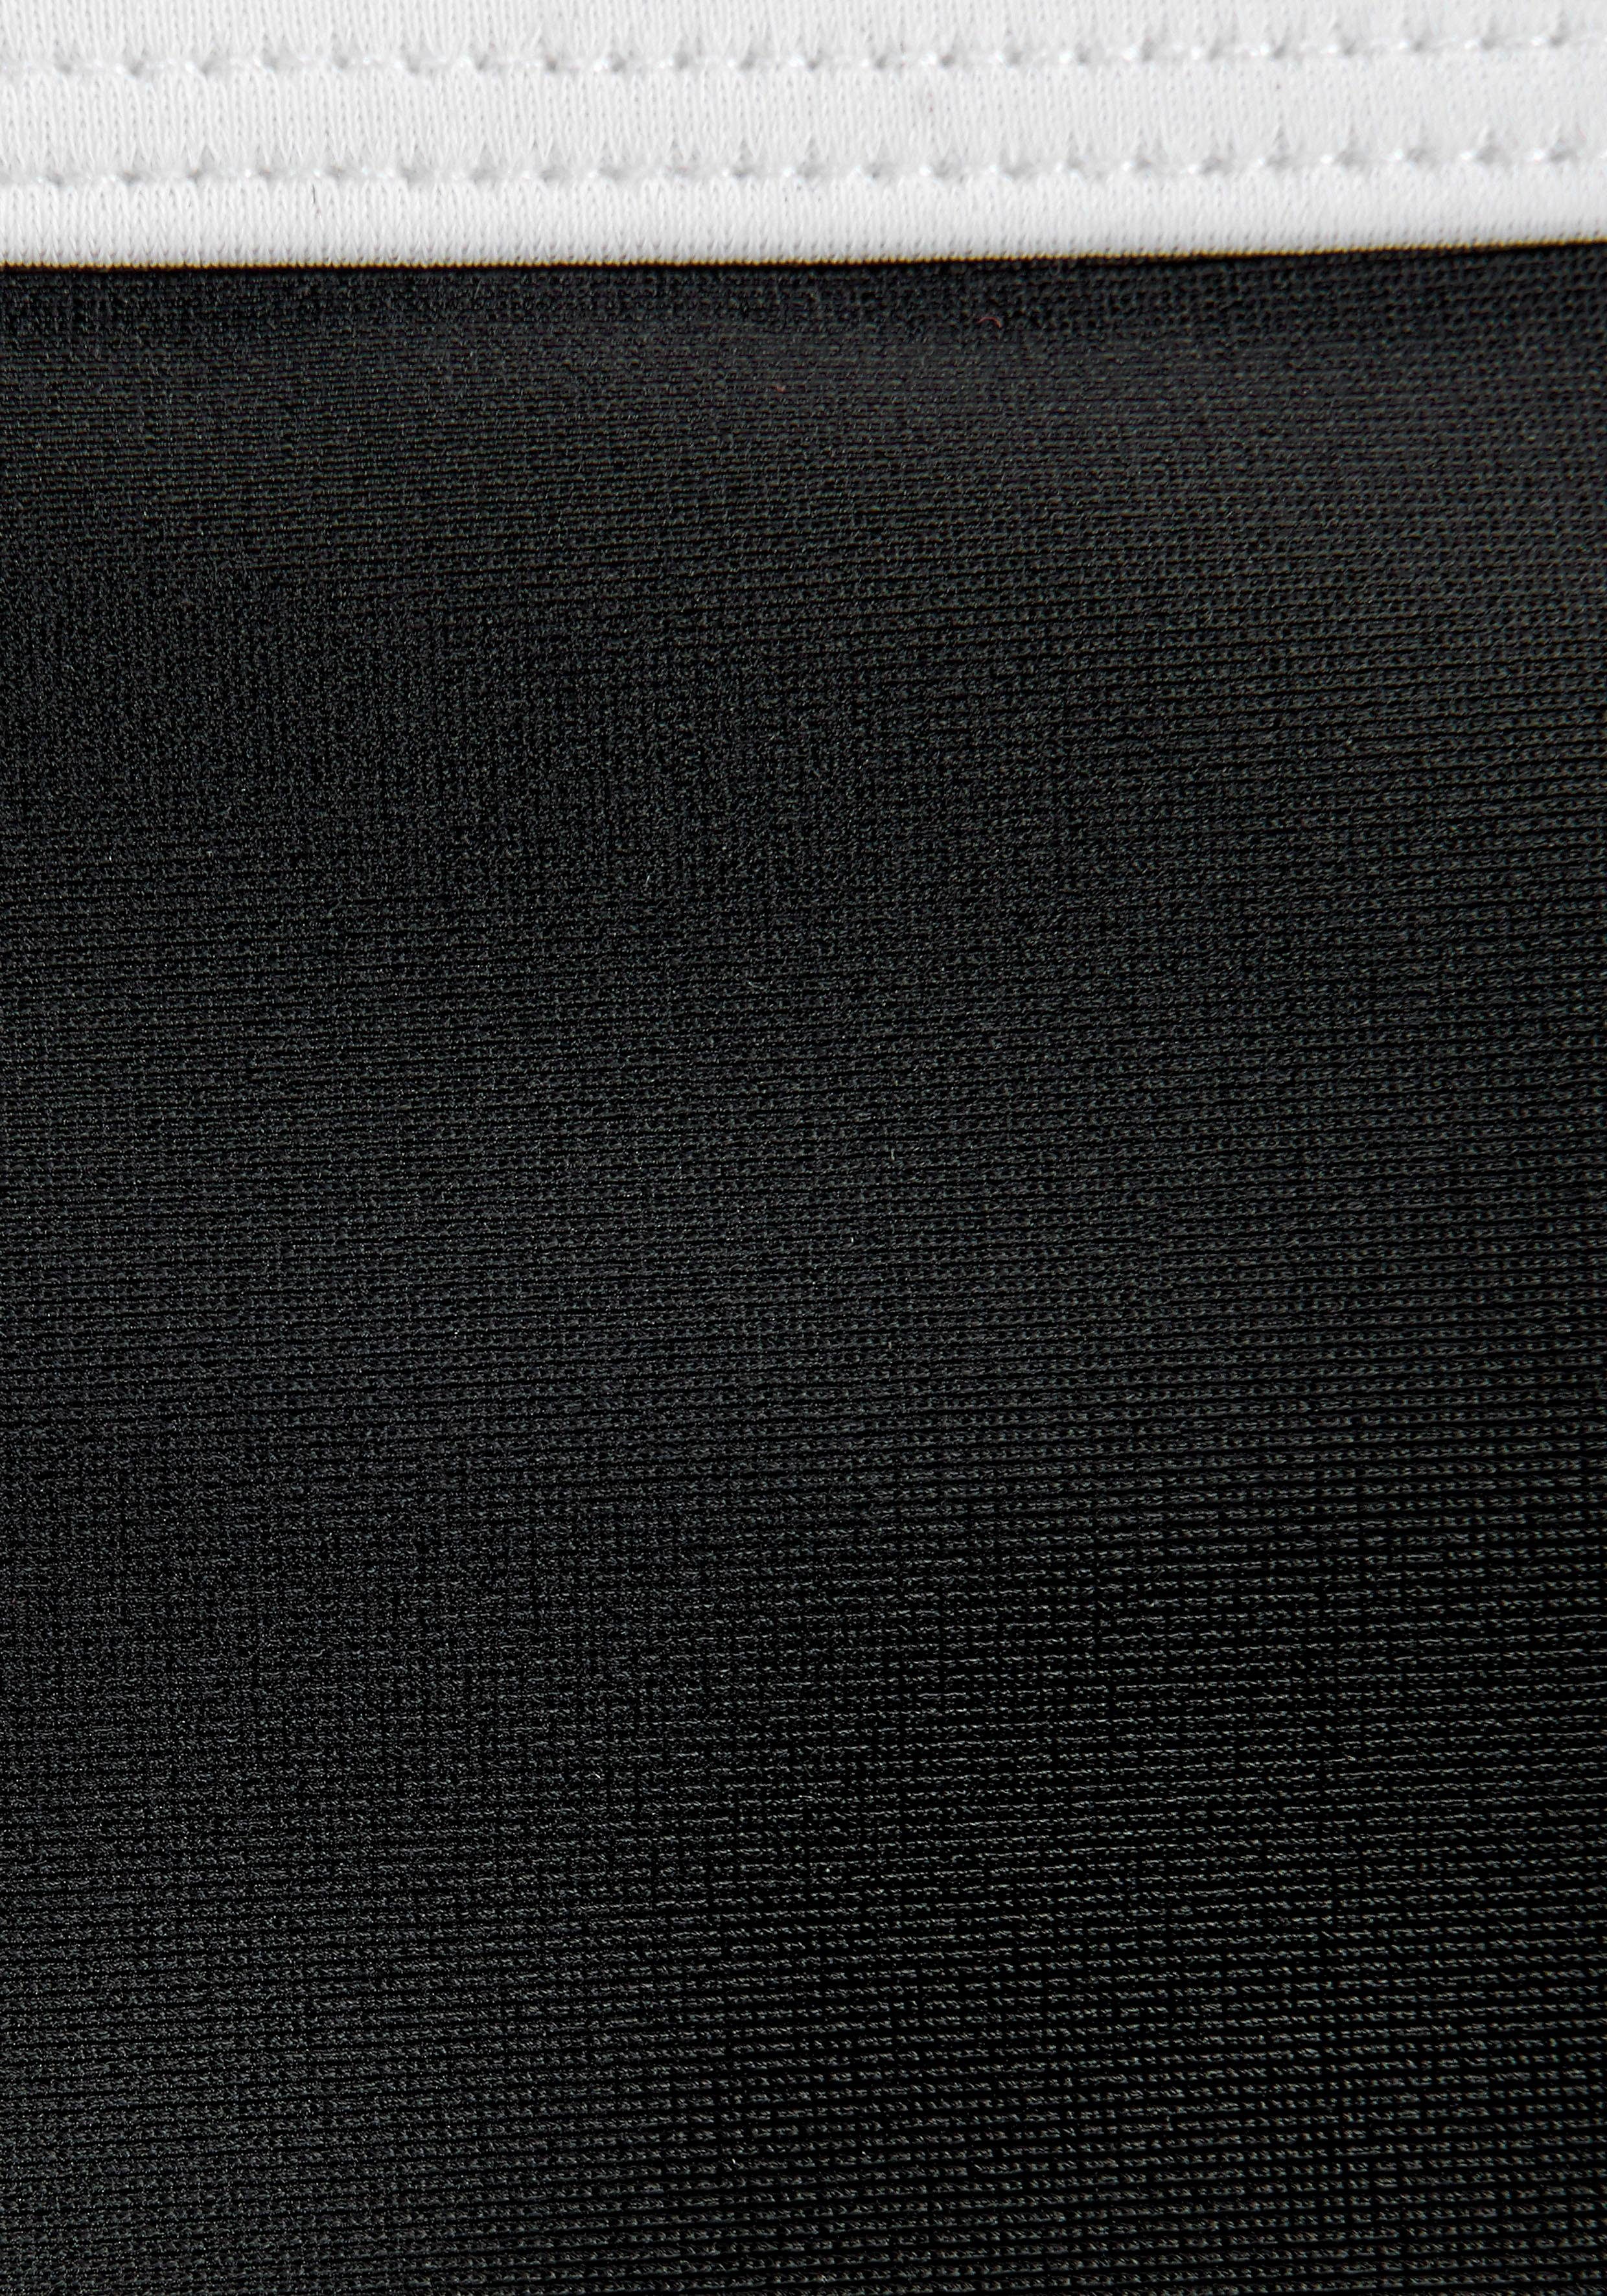 Badeanzug Logoprint schwarz-weiß mit Bench.